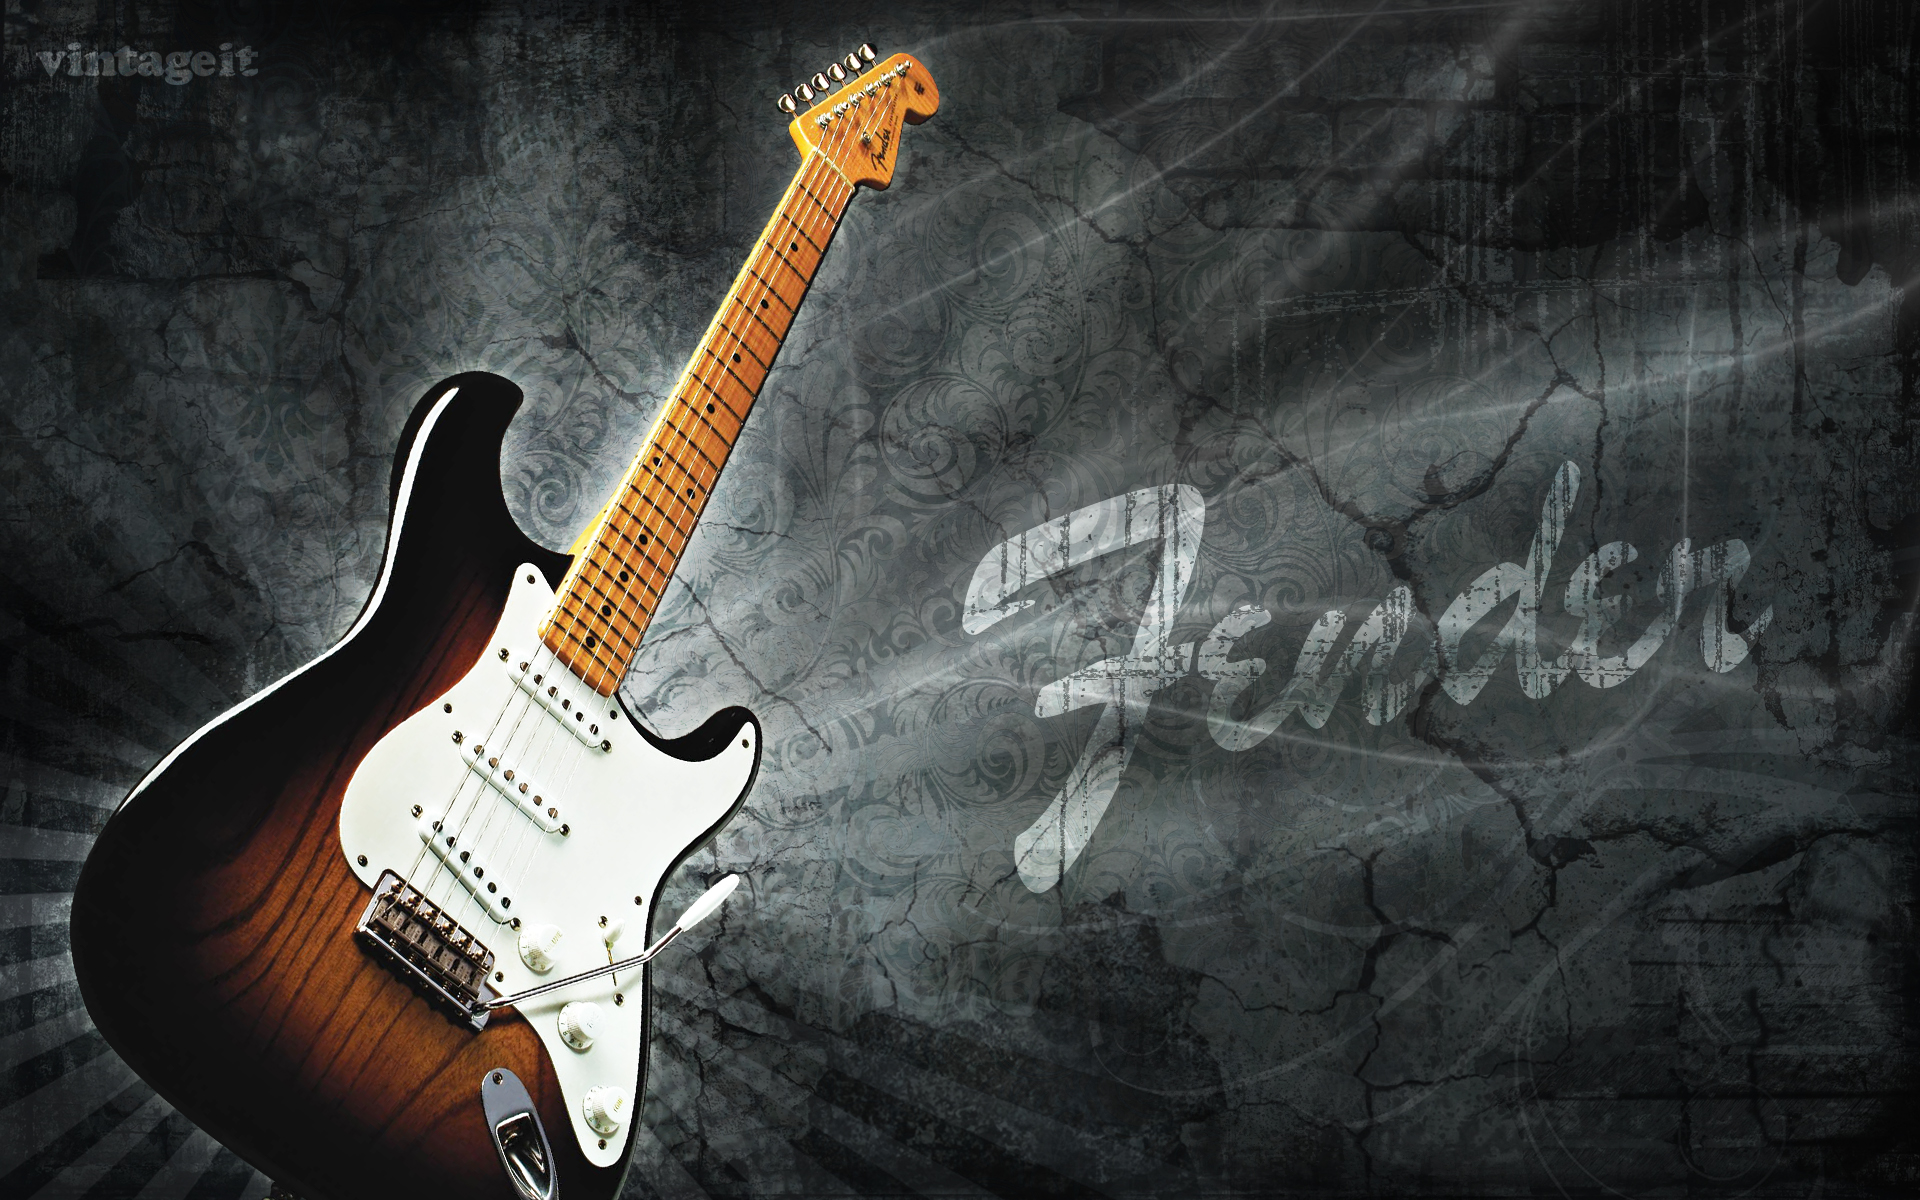 50+] Fender Guitar Wallpapers for Desktop - WallpaperSafari